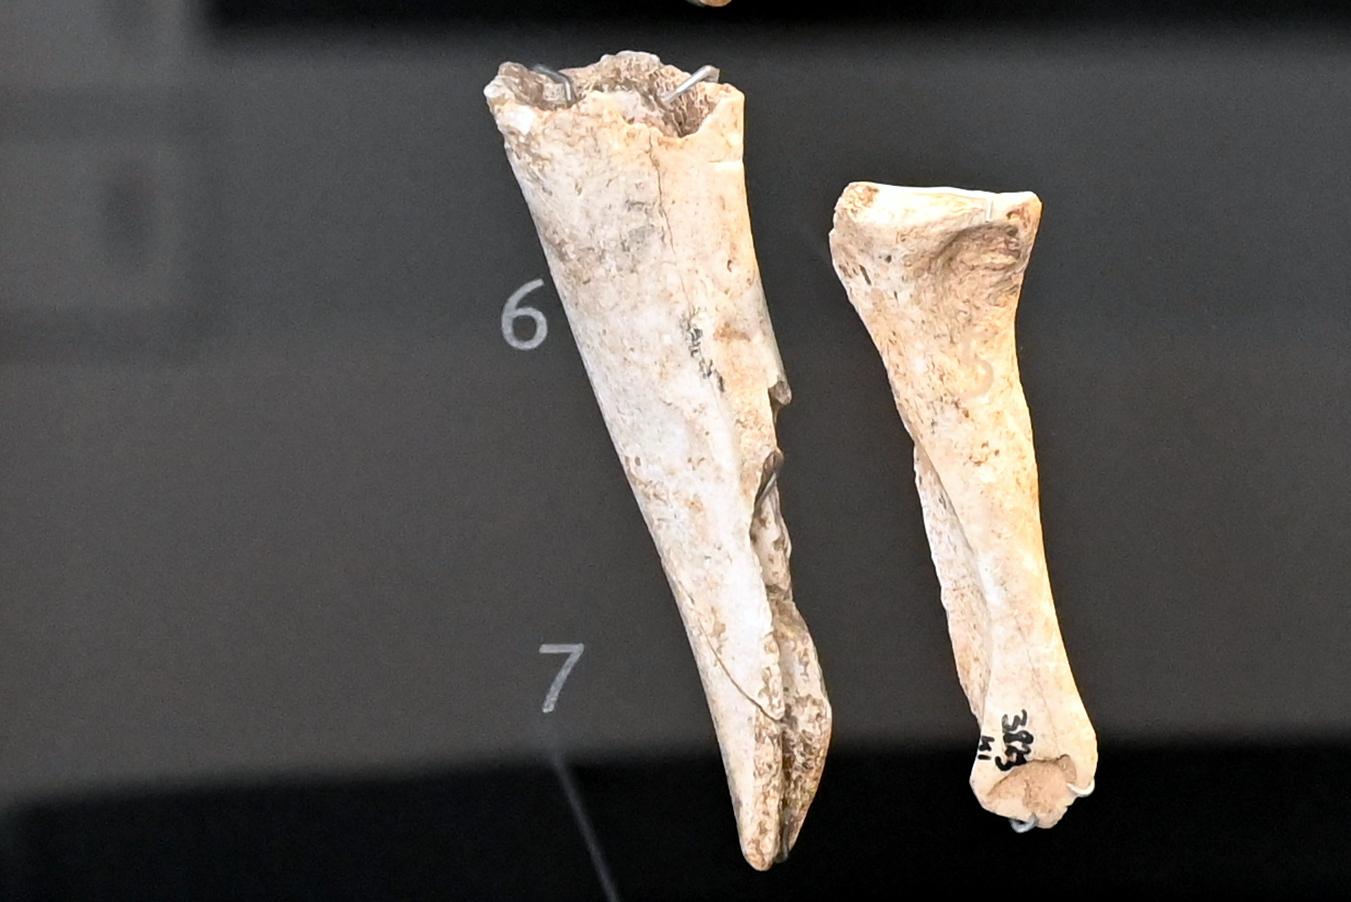 Röhrenmeißel, Neolithikum (Jungsteinzeit), 5500 - 1700 v. Chr., 3800 - 3600 v. Chr., Bild 1/3